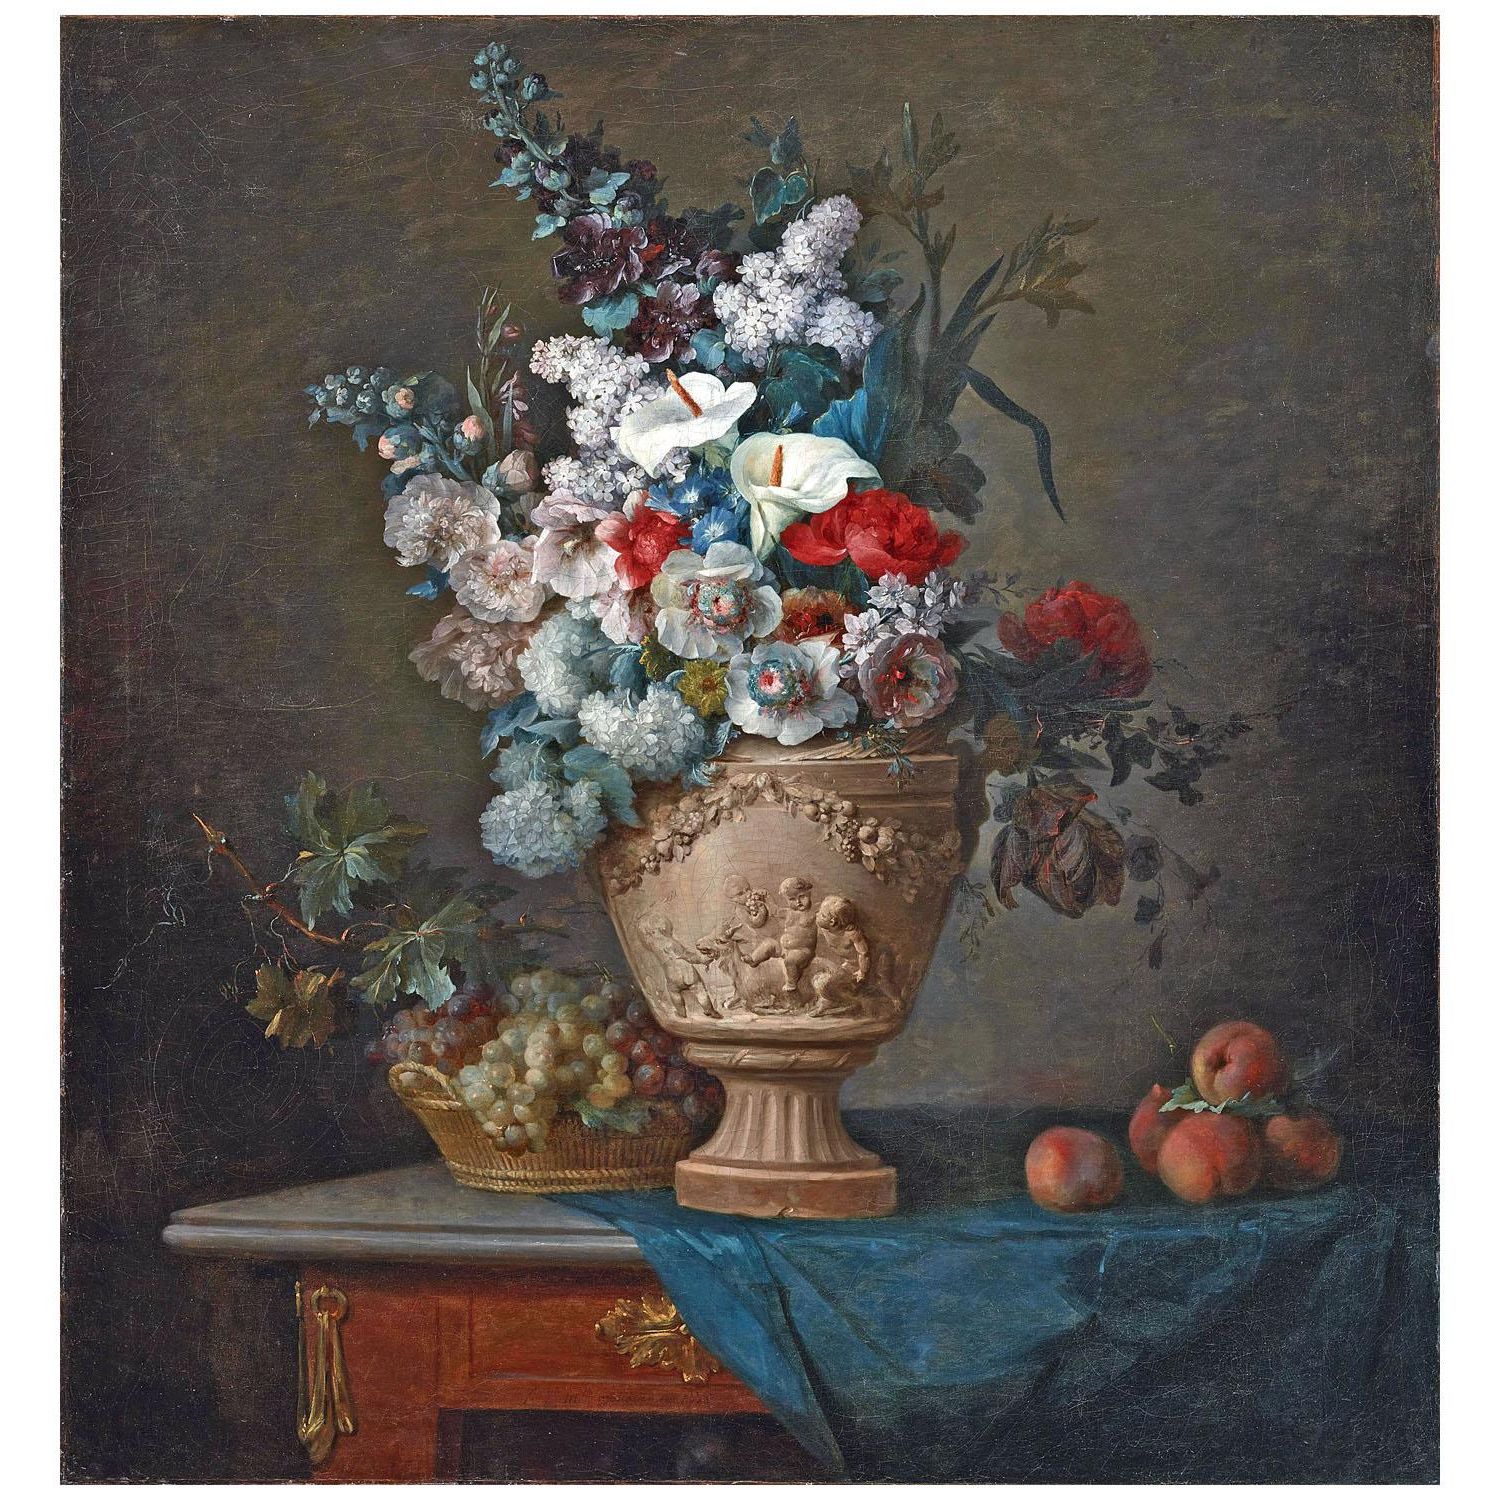 Anne Vallayer-Coster. Bouquet de Fleurs dans un vase céramique. 1776. Dallas Museum of Art